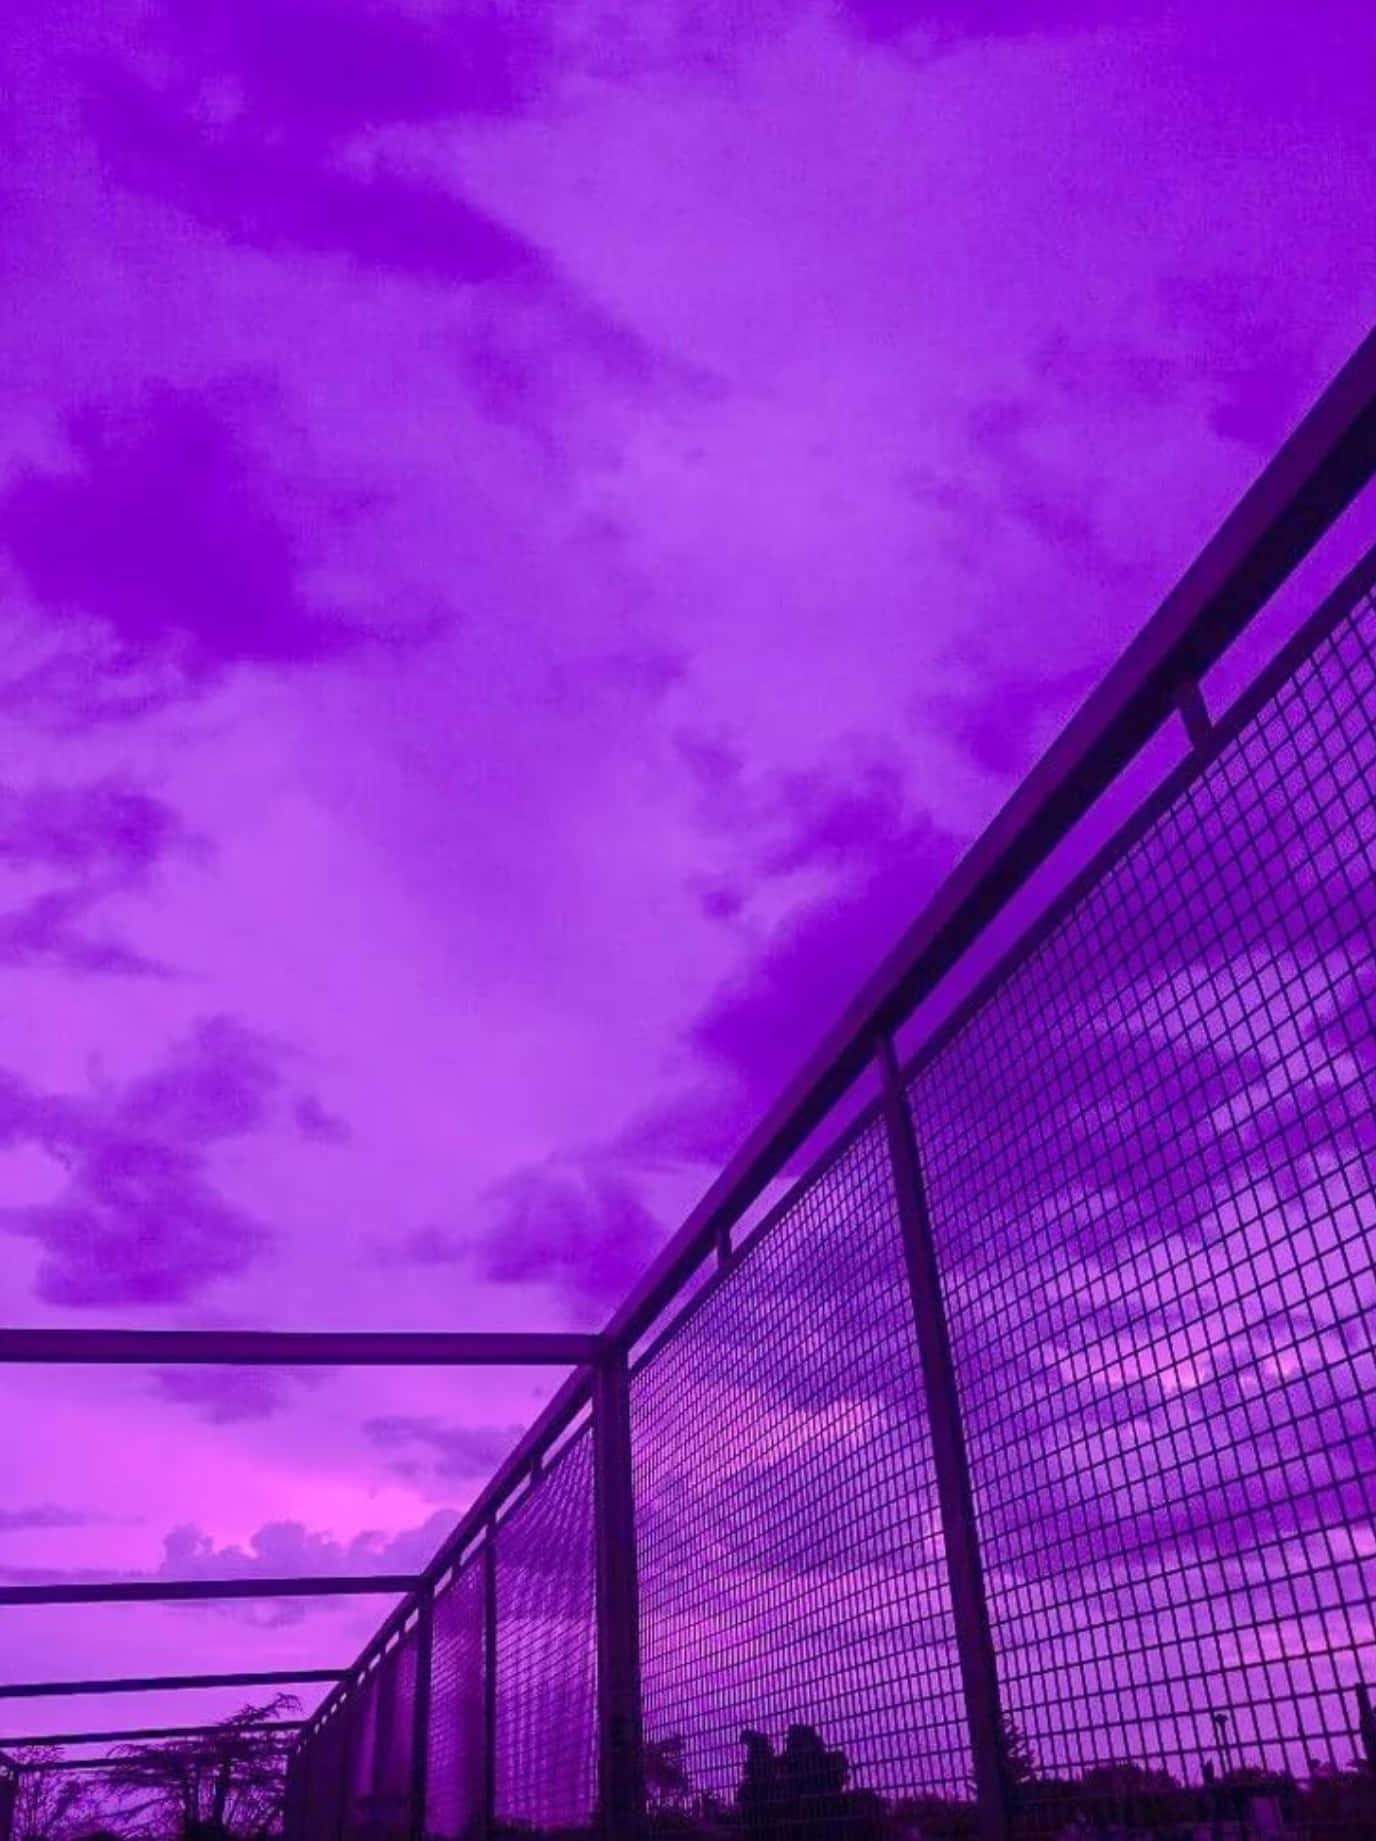 Aesthetic purple pics